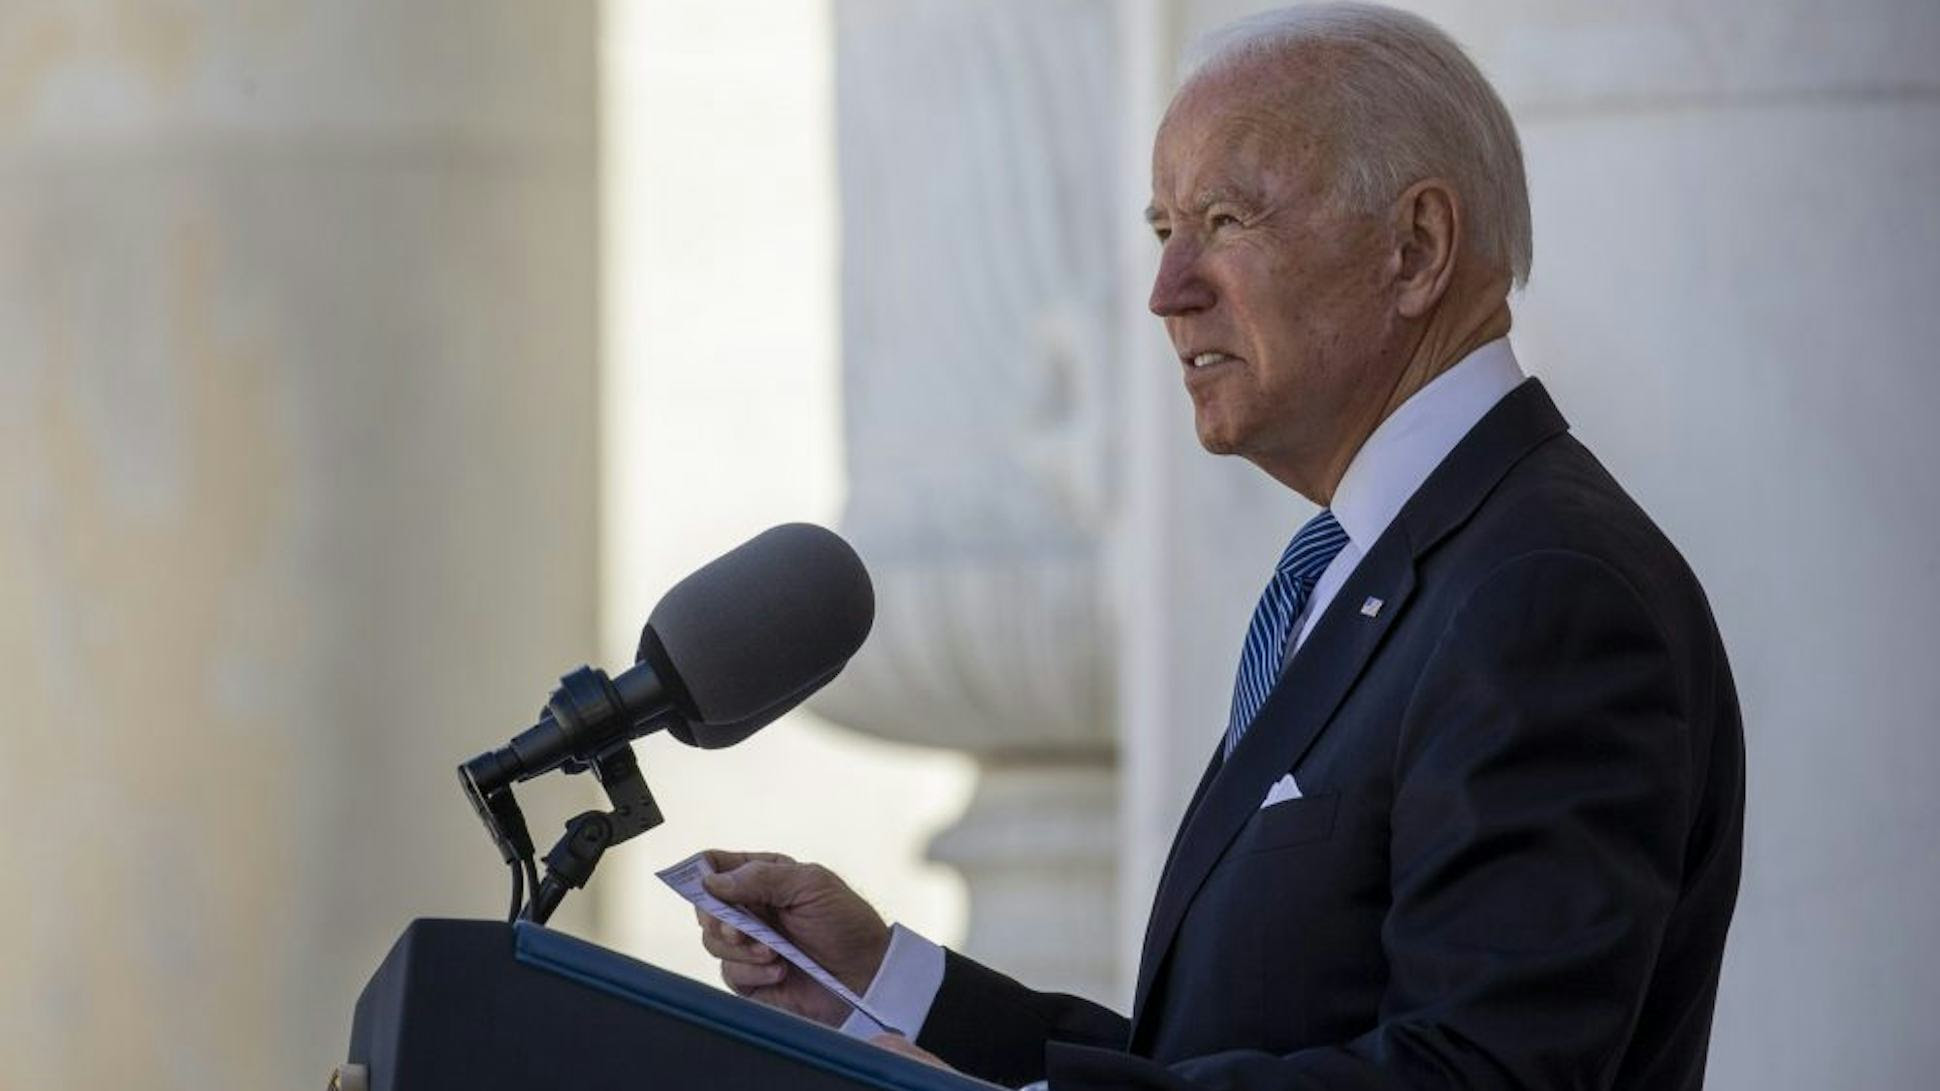 President Joe Biden stands behind a podium, giving a speech